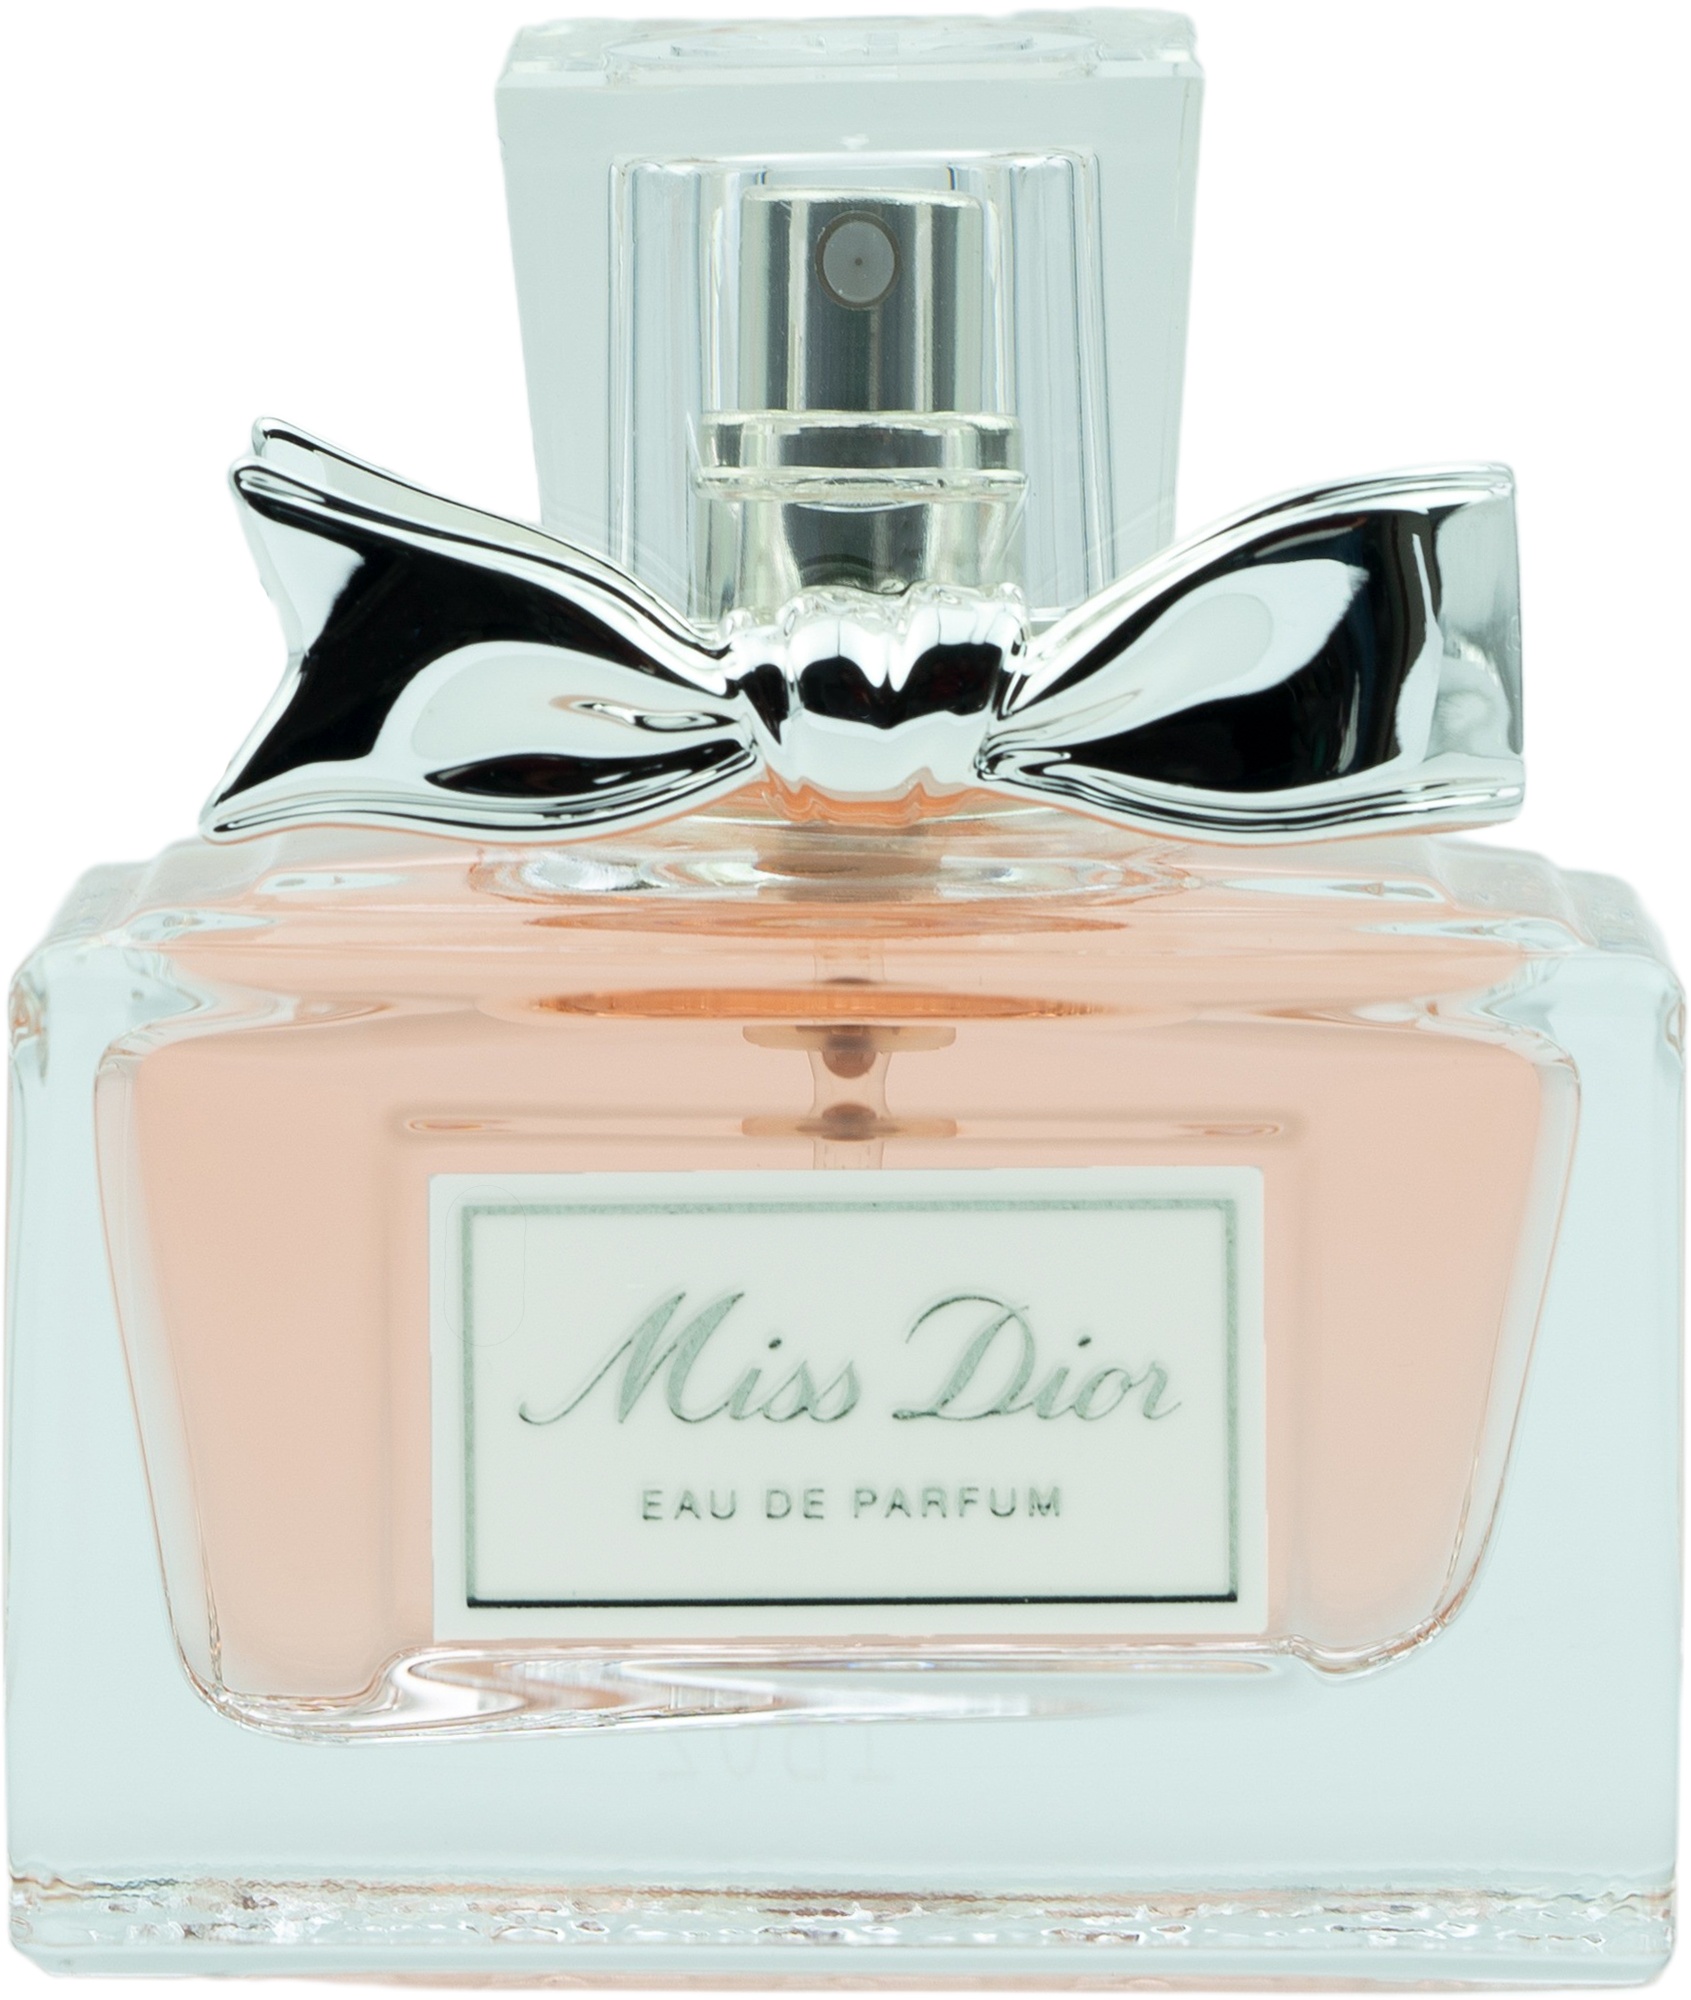 Bild von Miss Dior Eau de Parfum 30 ml